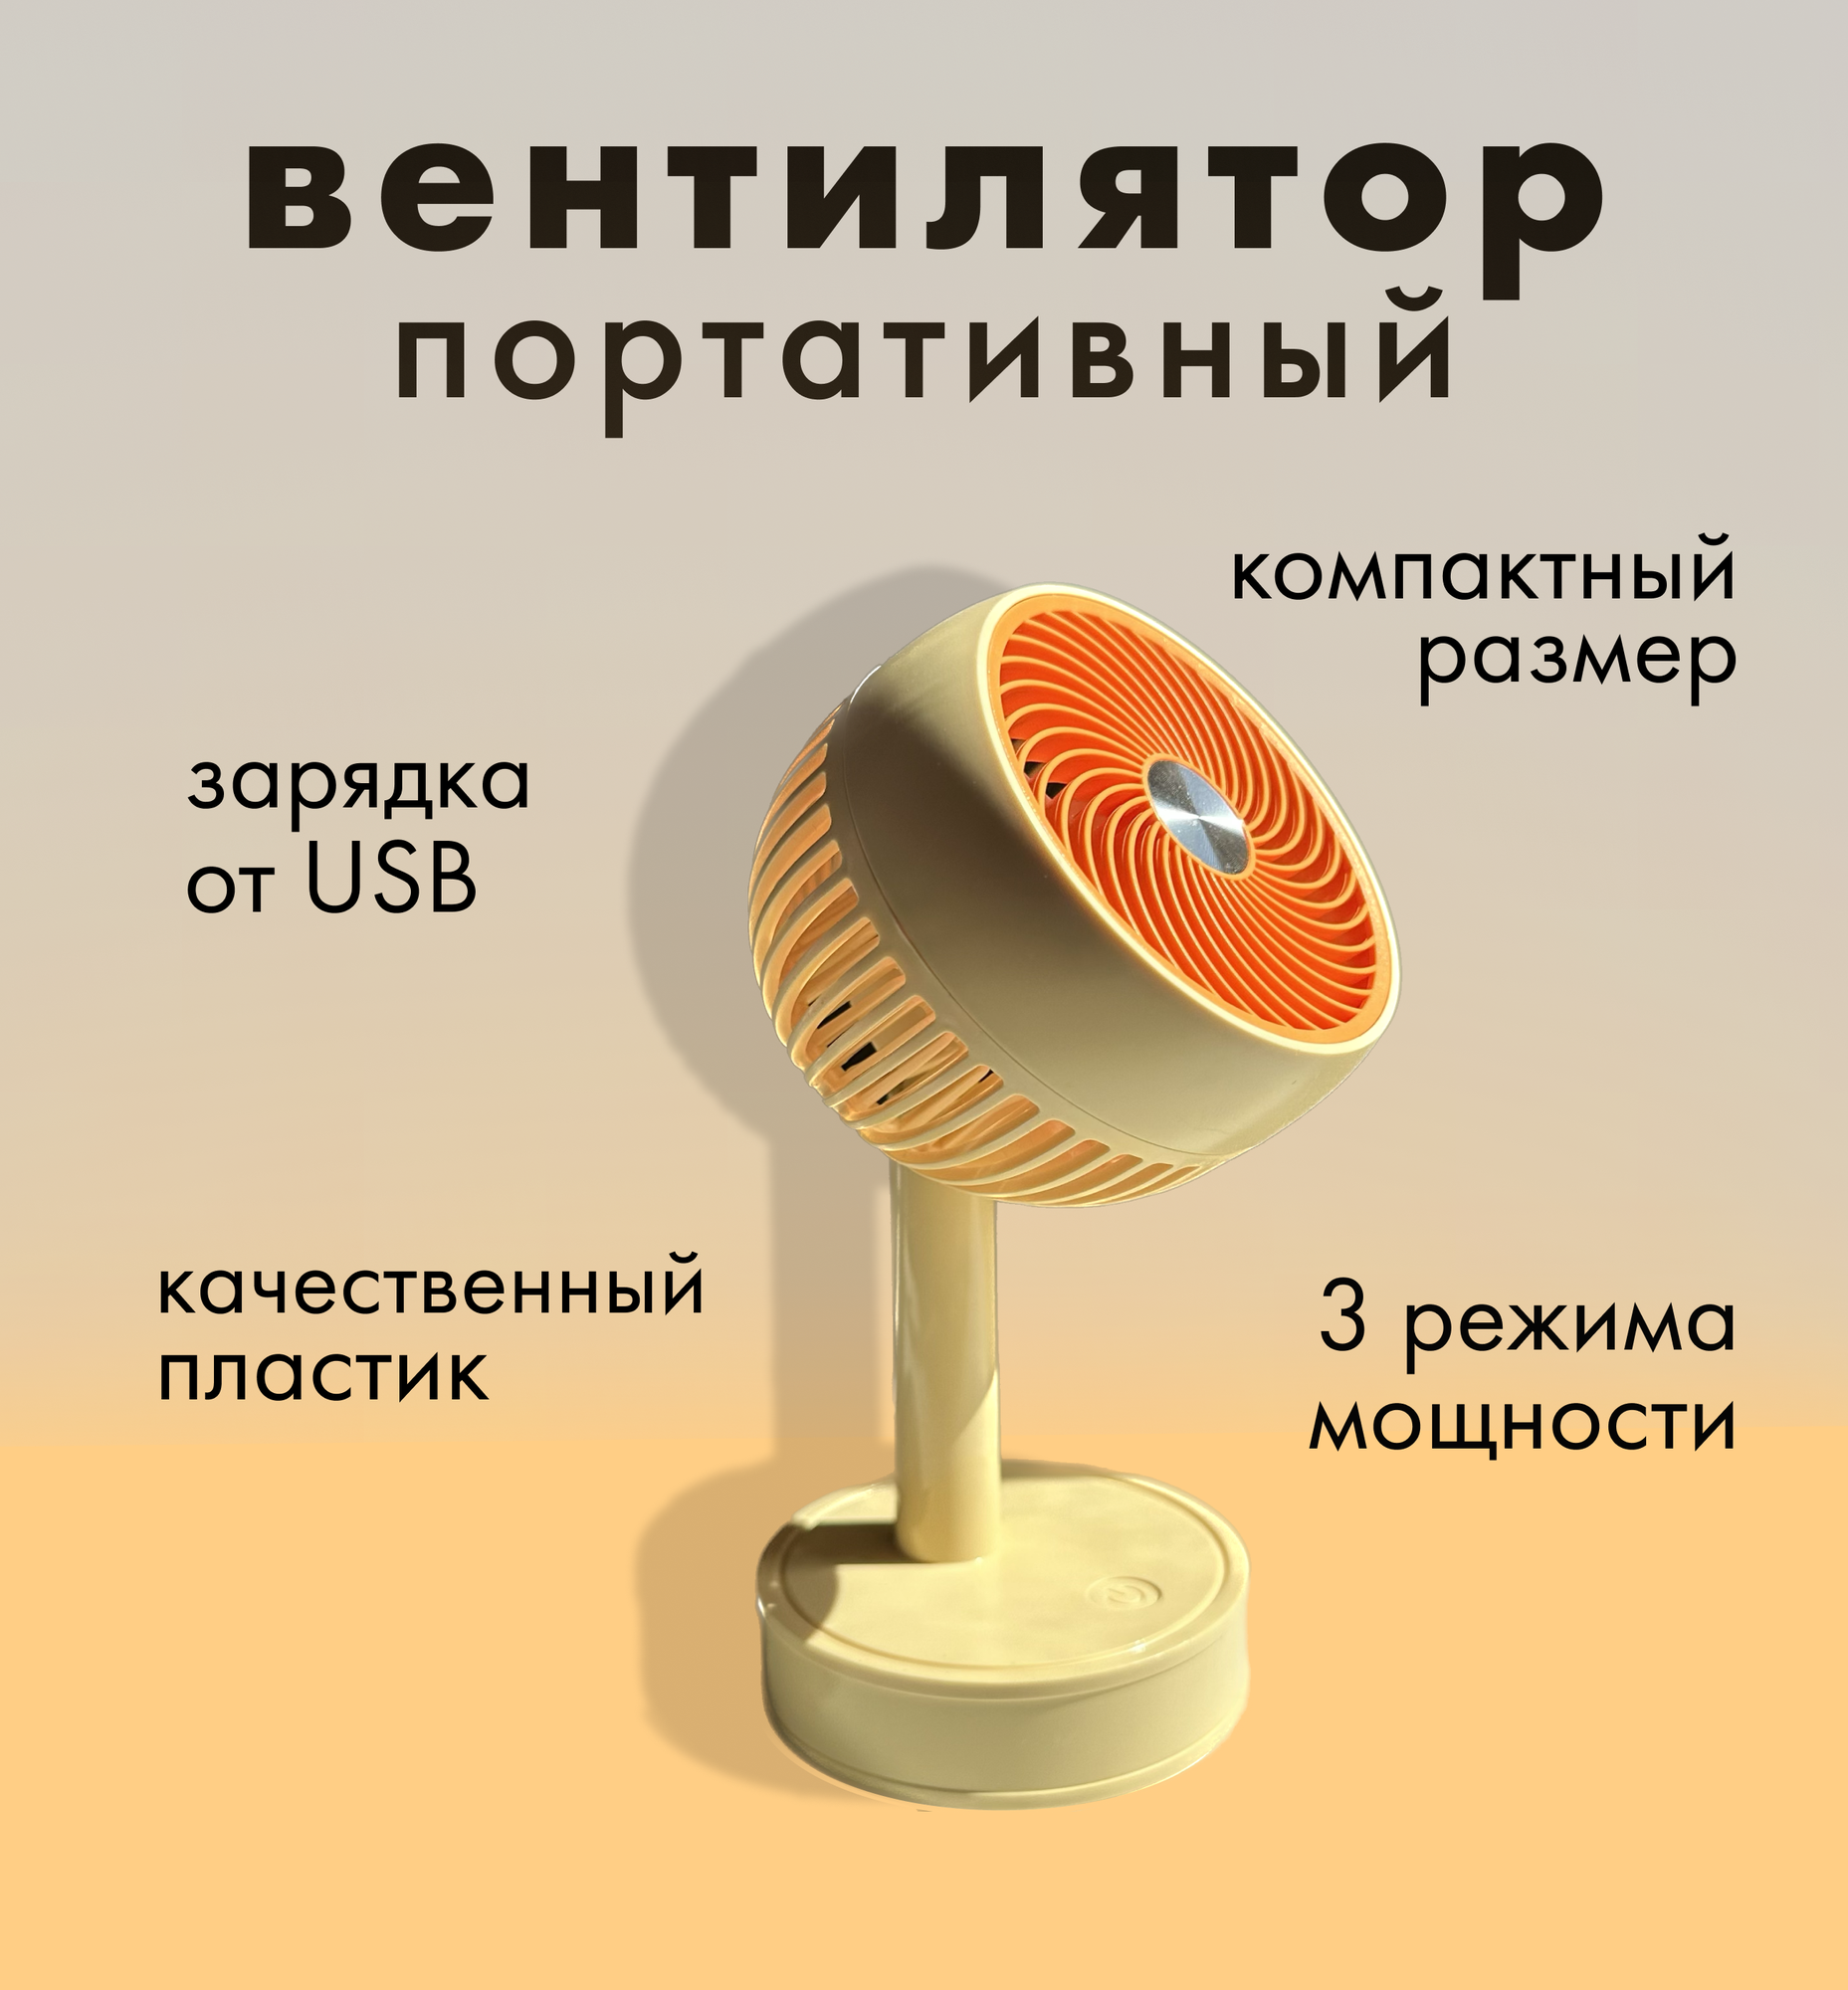 Портативный ручной вентилятор/ Вентилятор на аккумуляторе/ мини кондиционер